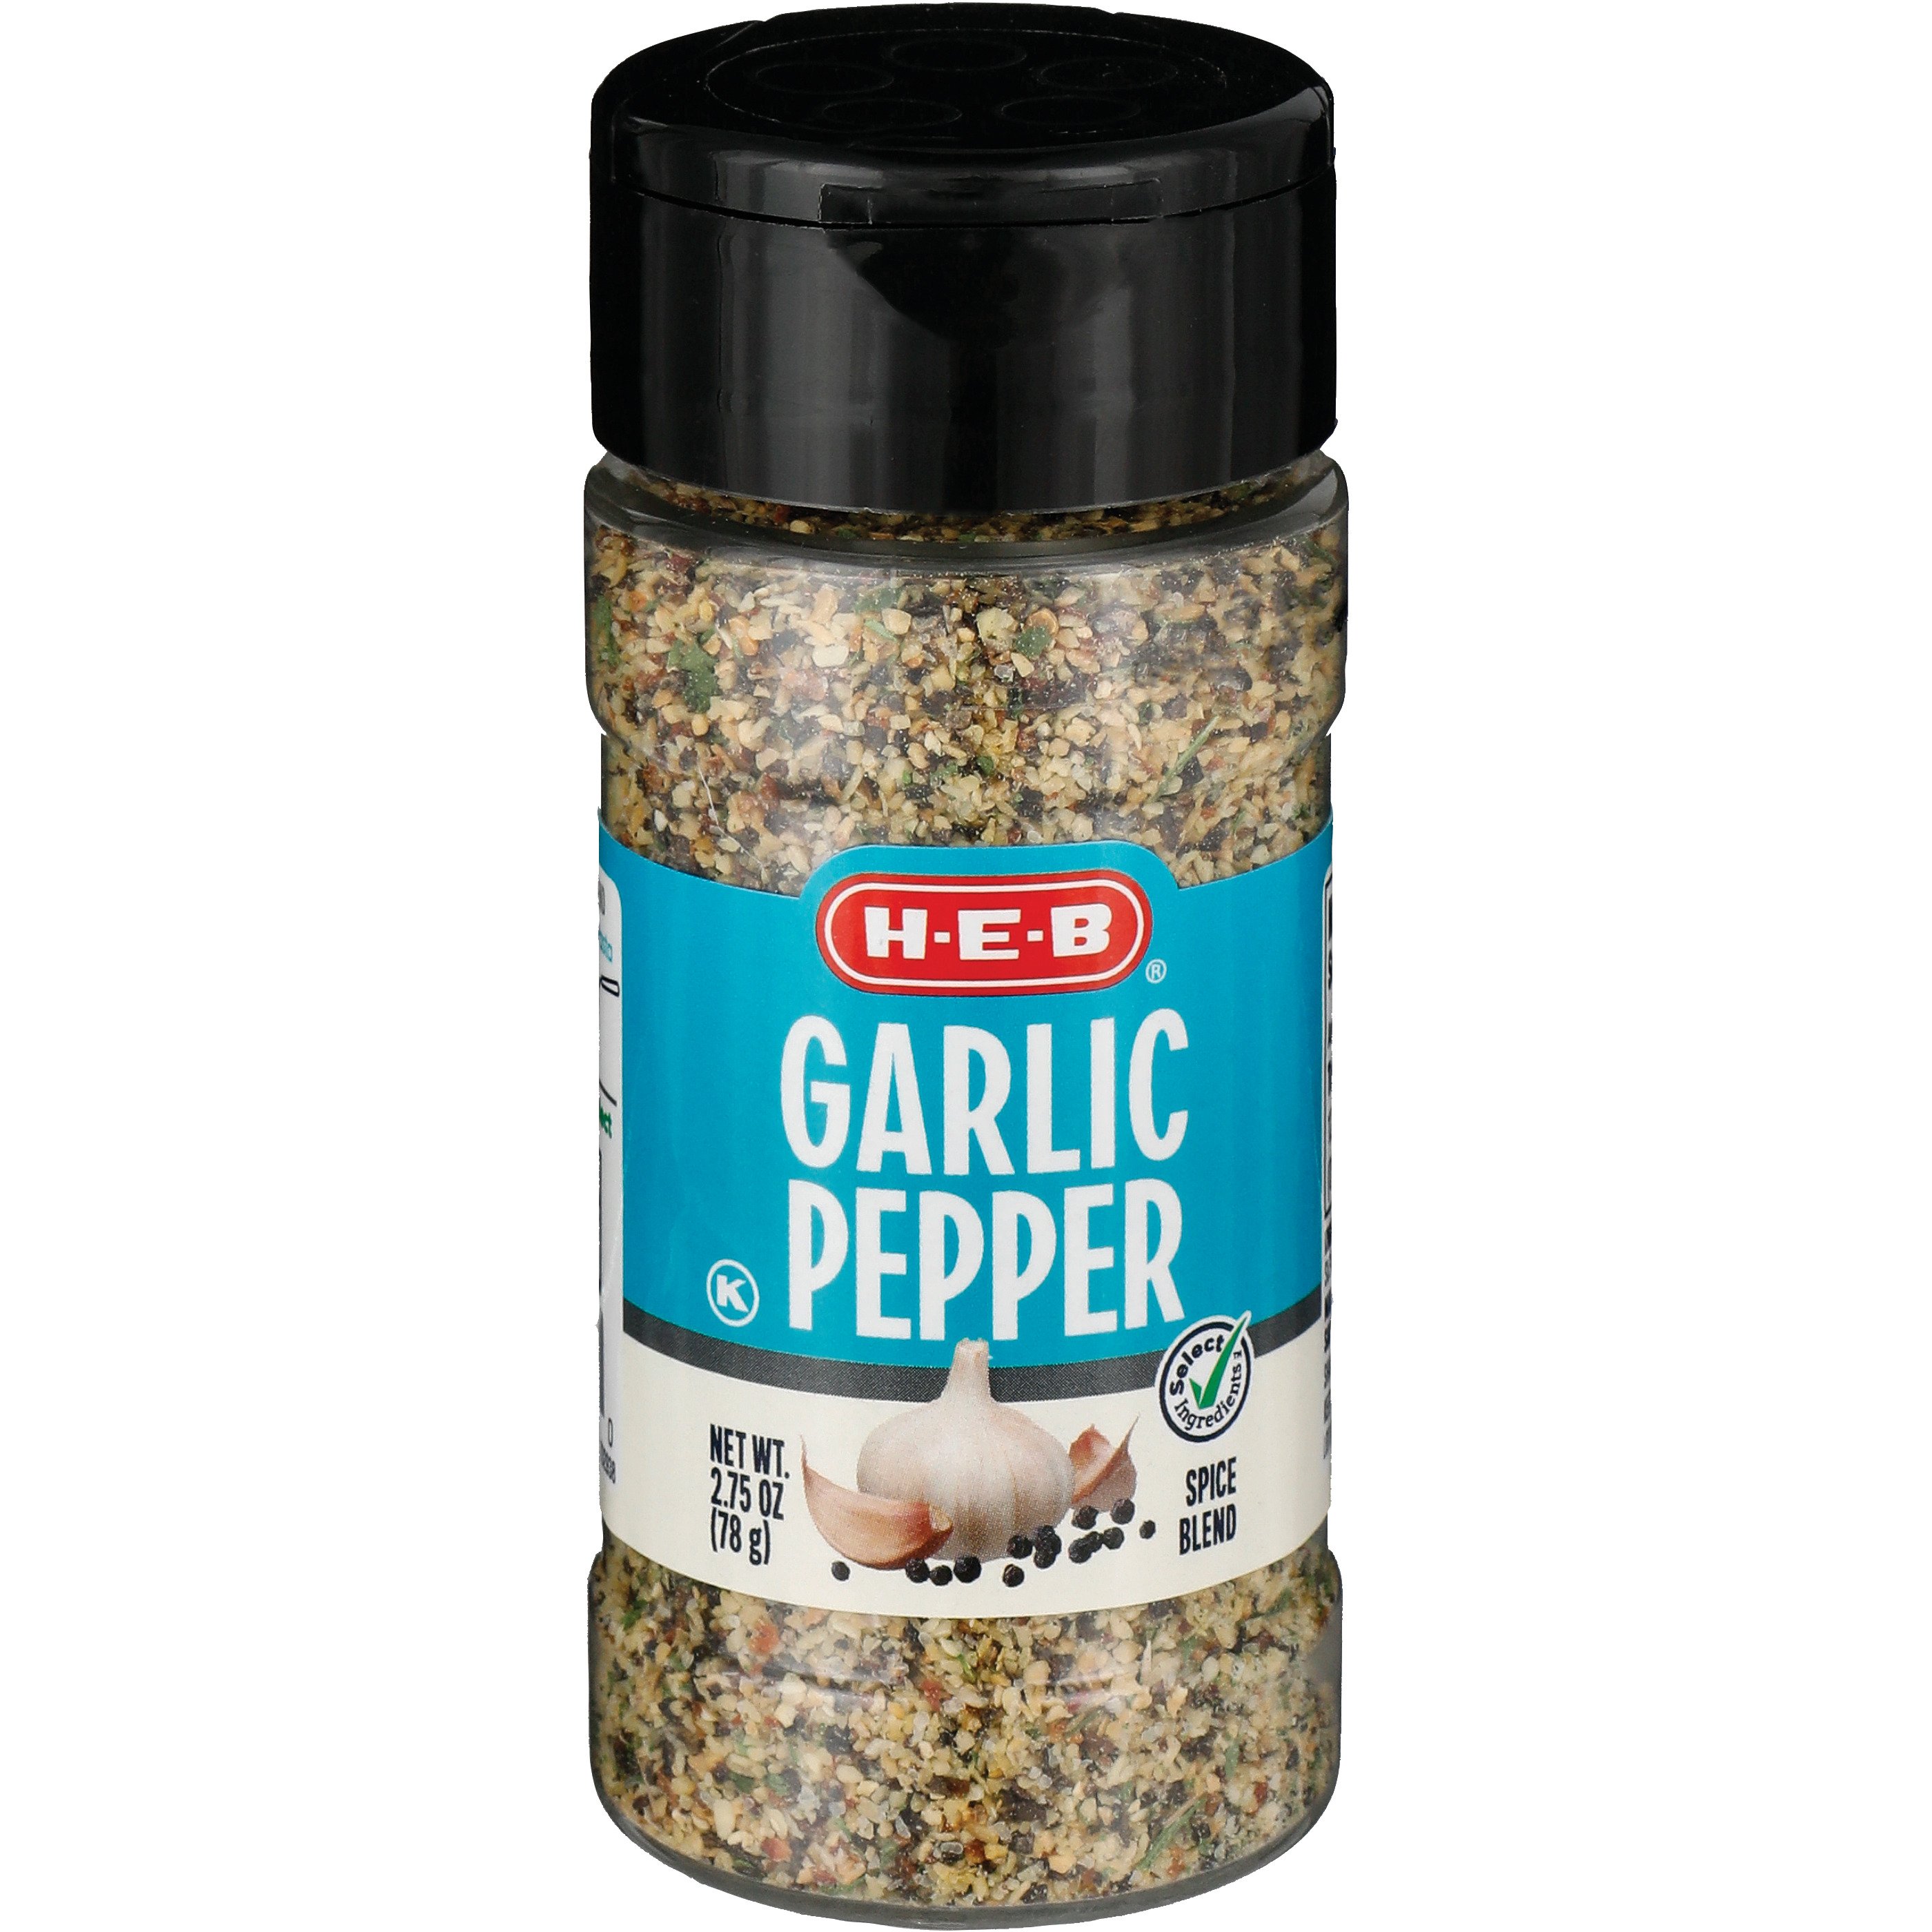 Buy Spices Online - Garlic & Pepper Steak Blend - Salt Free